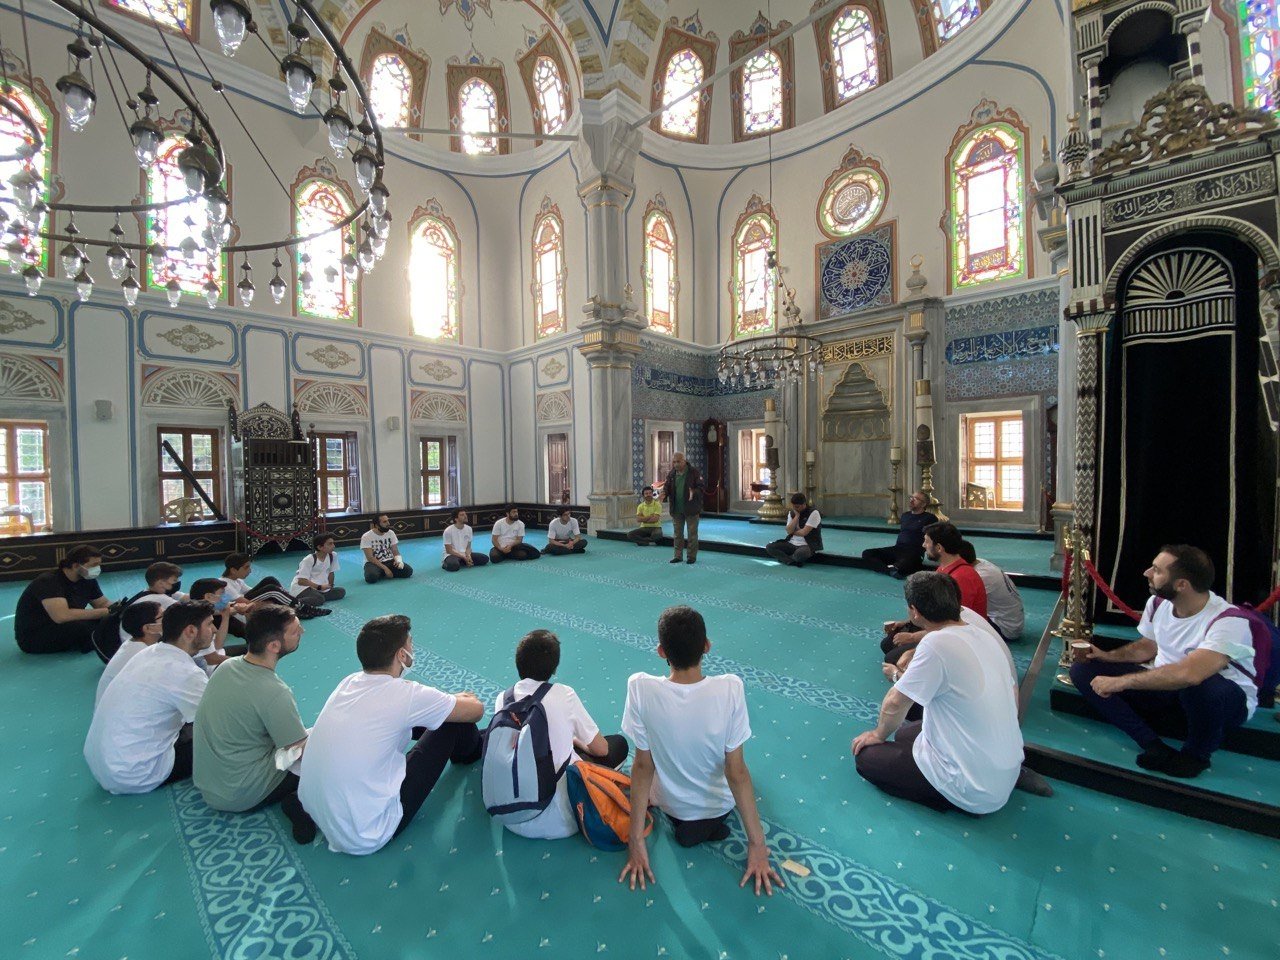 Esat Yapıcı dan pemuda di dalam masjid, mengobrol setelah sesi membaca buku, di Istanbul, Türkiye, 4 September 2022. (Foto oleh Serkan nlü)